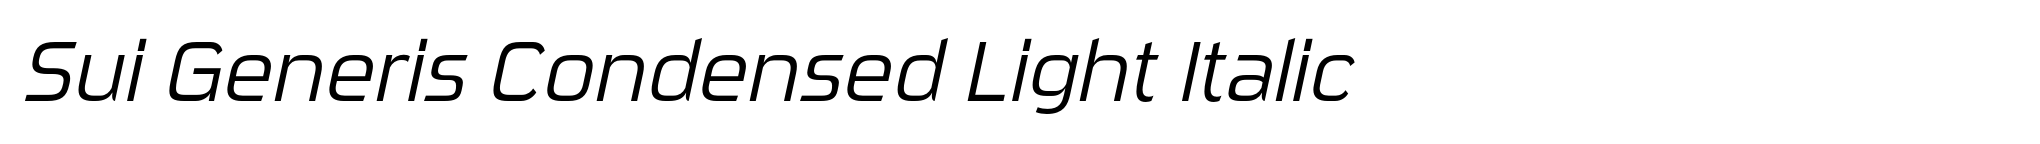 Sui Generis Condensed Light Italic image